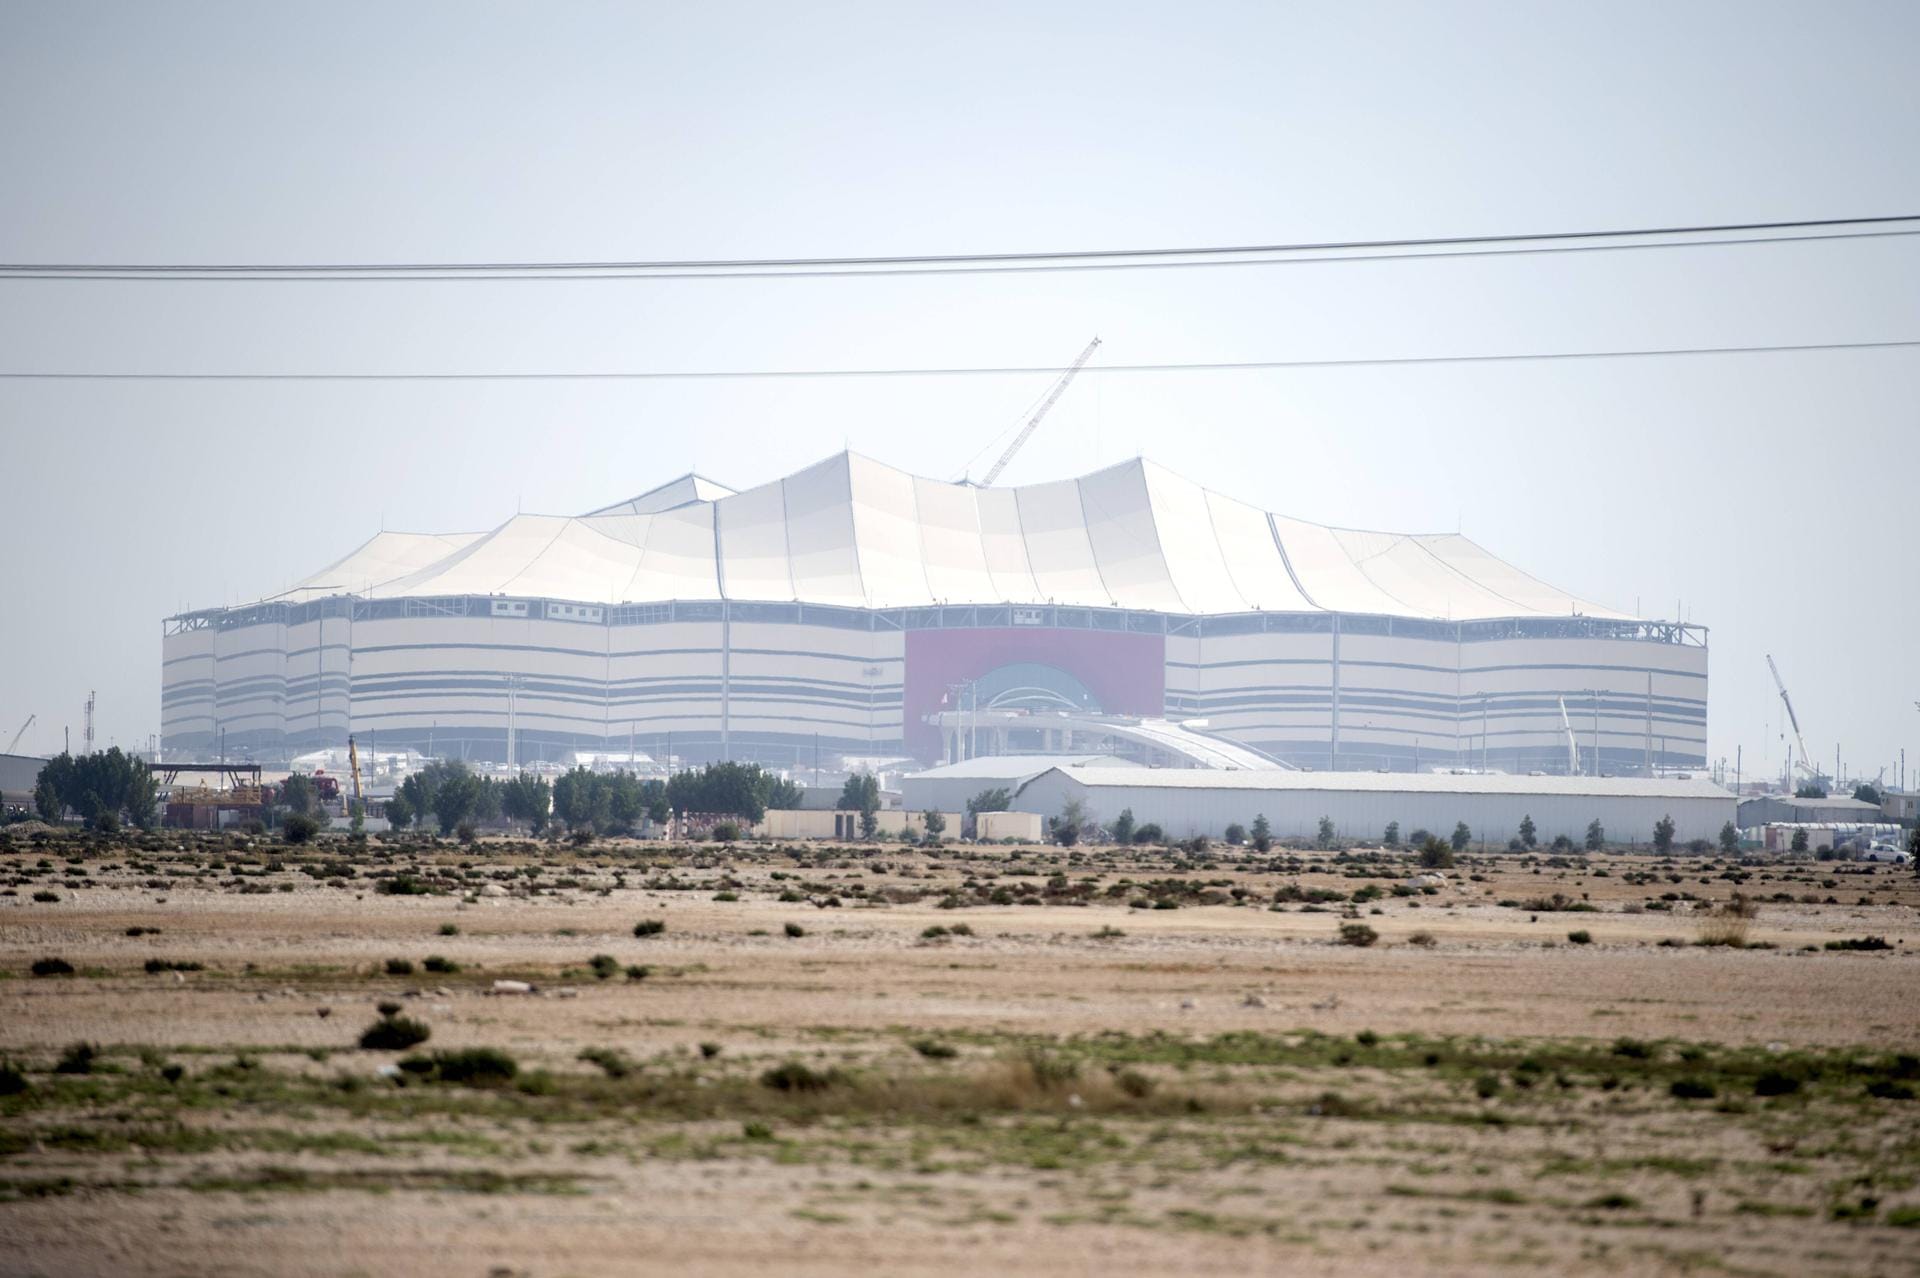 Al-Bayt-Stadion (al-Chaur): 60.000 Plätze. Die Arena wurde im November 2021 eröffnet. Hier werden sechs Gruppenspiele, darunter das Eröffnungsspiel, ein Achtel-, ein Viertel- und ein Halbfinale ausgetragen.